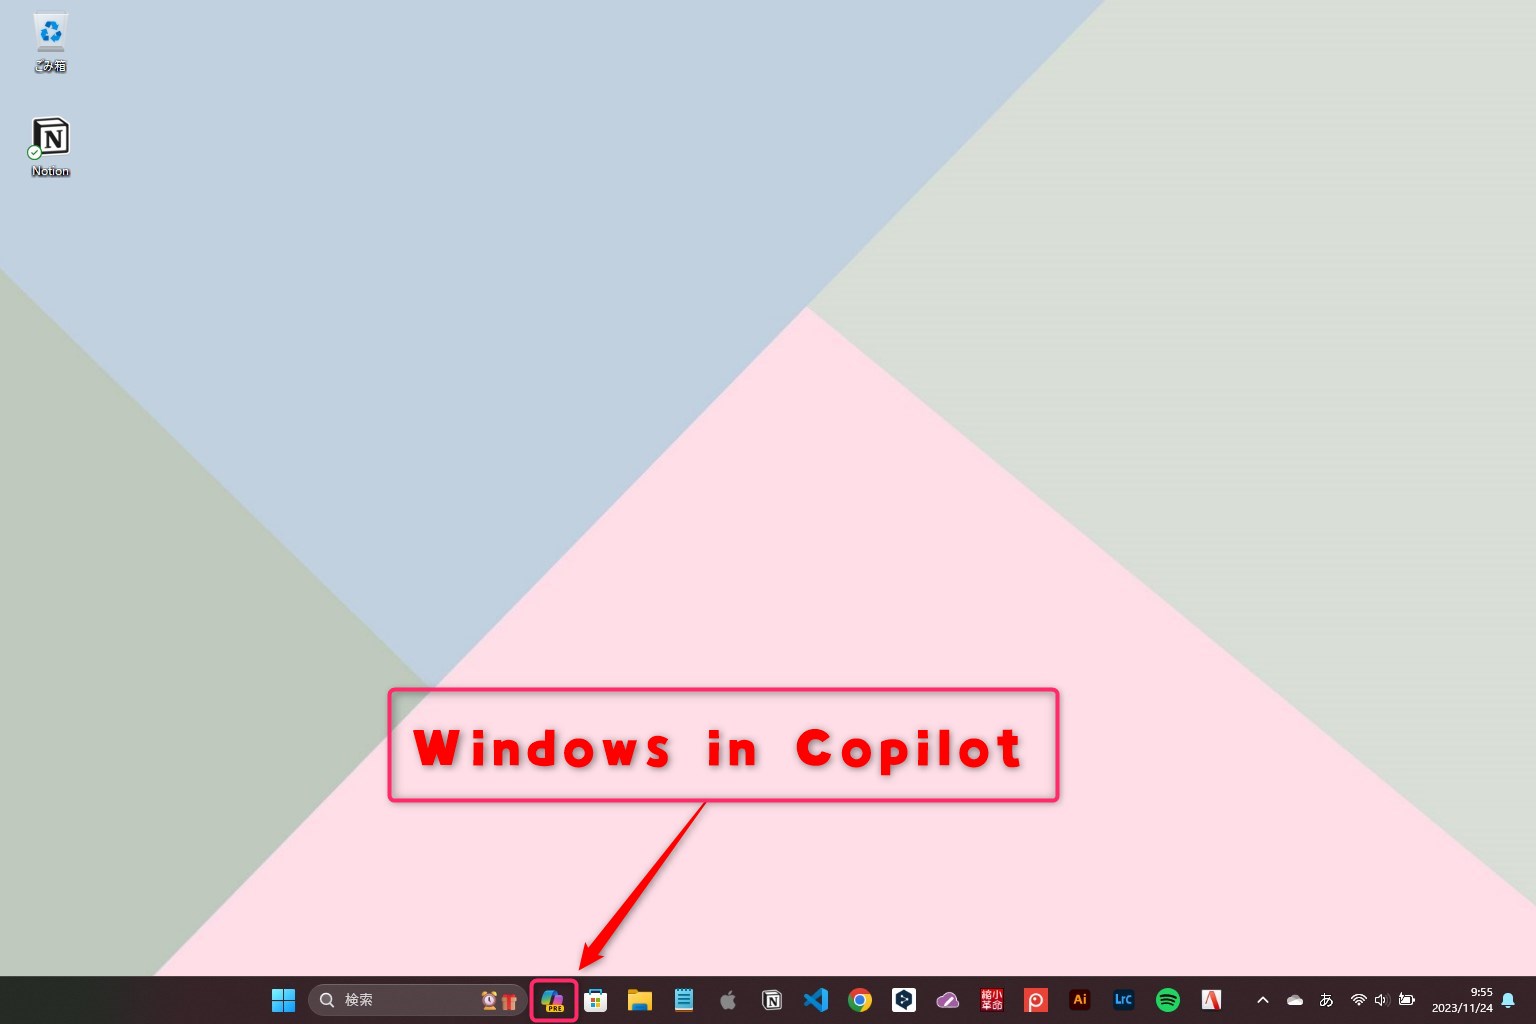 Windows in Copilot